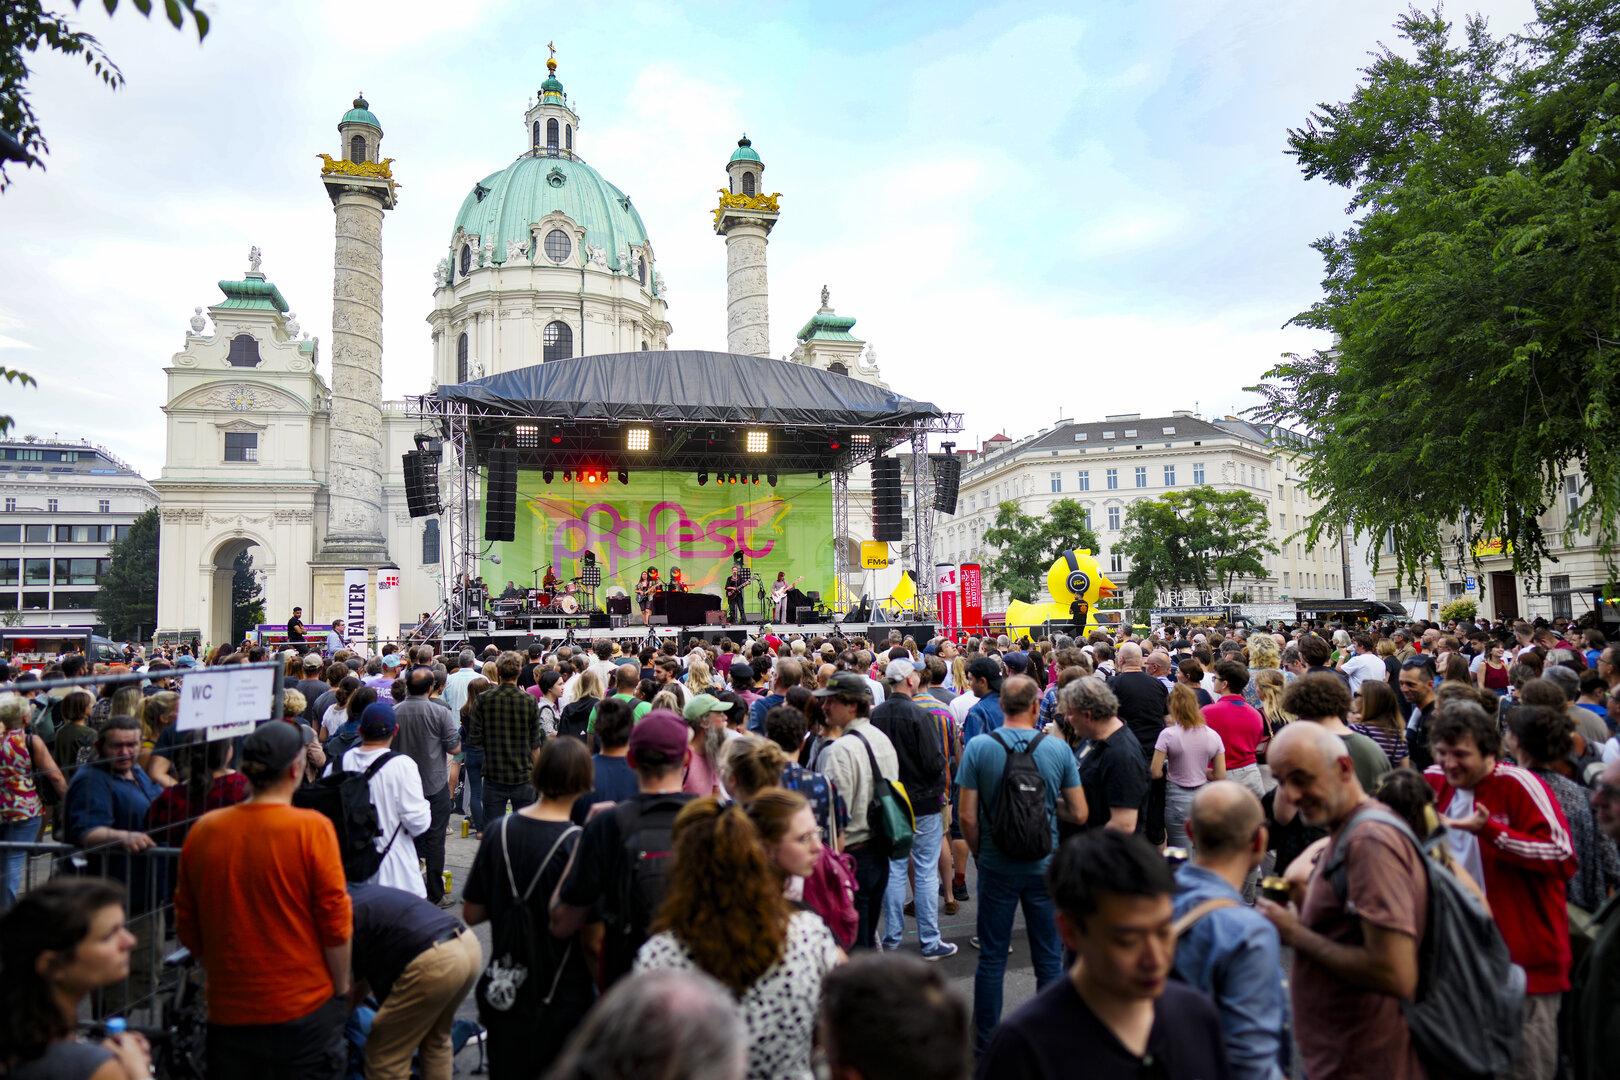 Nino aus Wien, Verifiziert: So sieht das Programm vom Popfest Wien aus